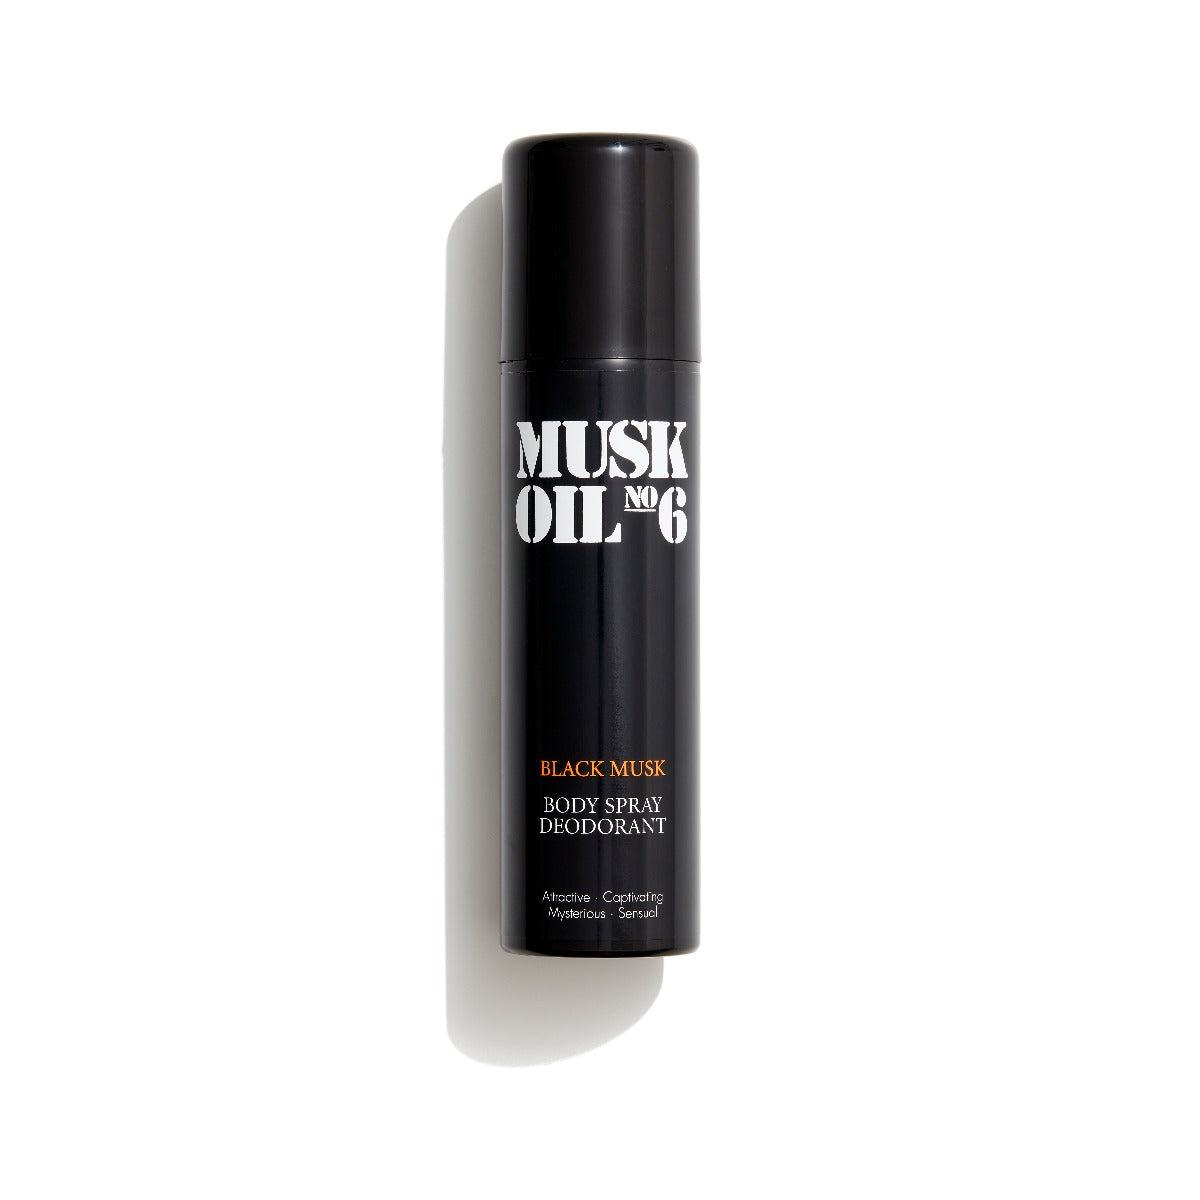 Gosh Musk Oil Deo Spray no. 6 Black 150ml